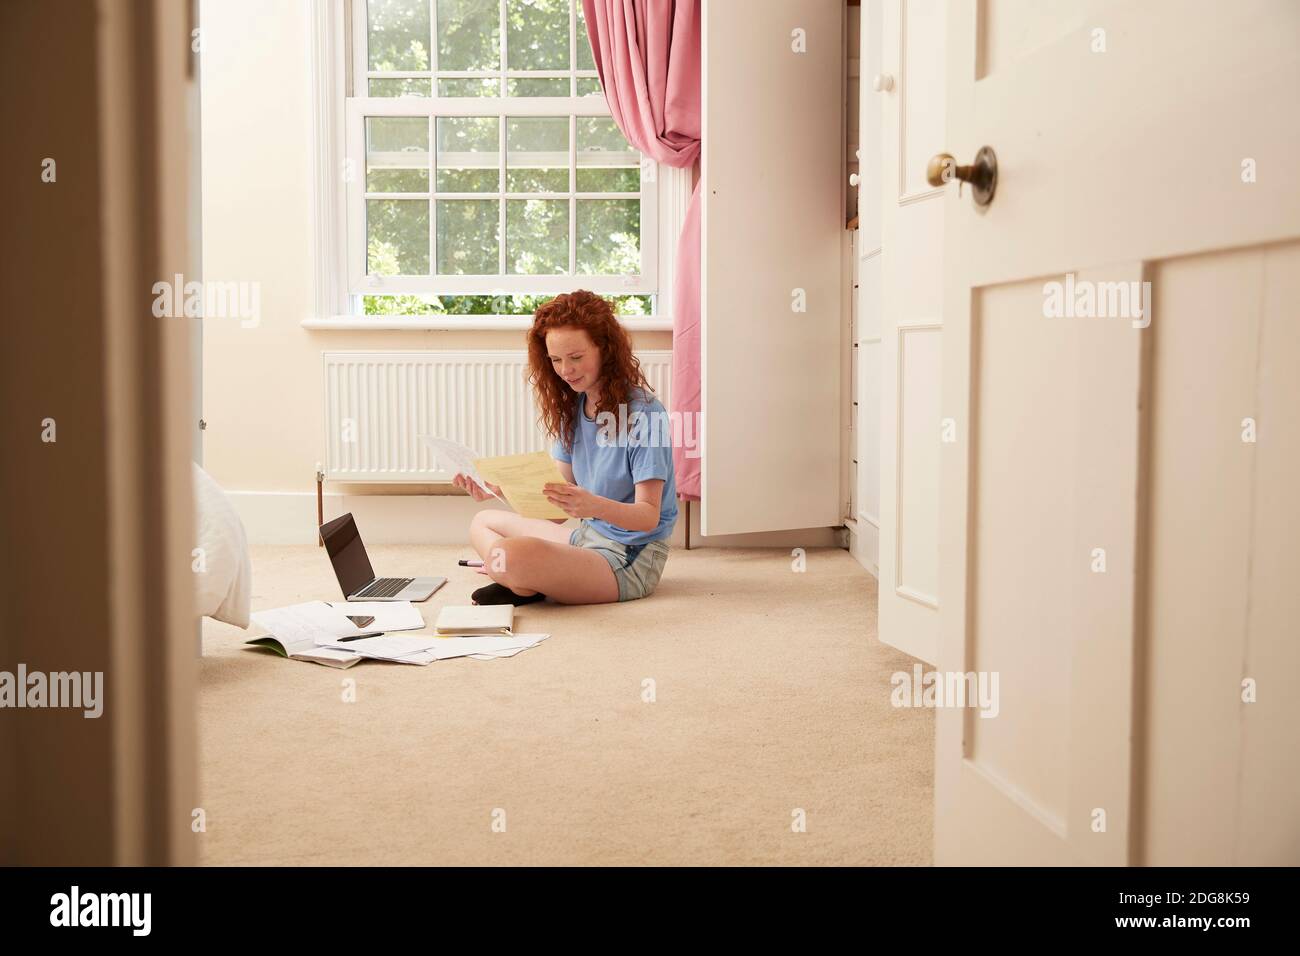 Preteen girl doing homework at laptop on bedroom floor Stock Photo